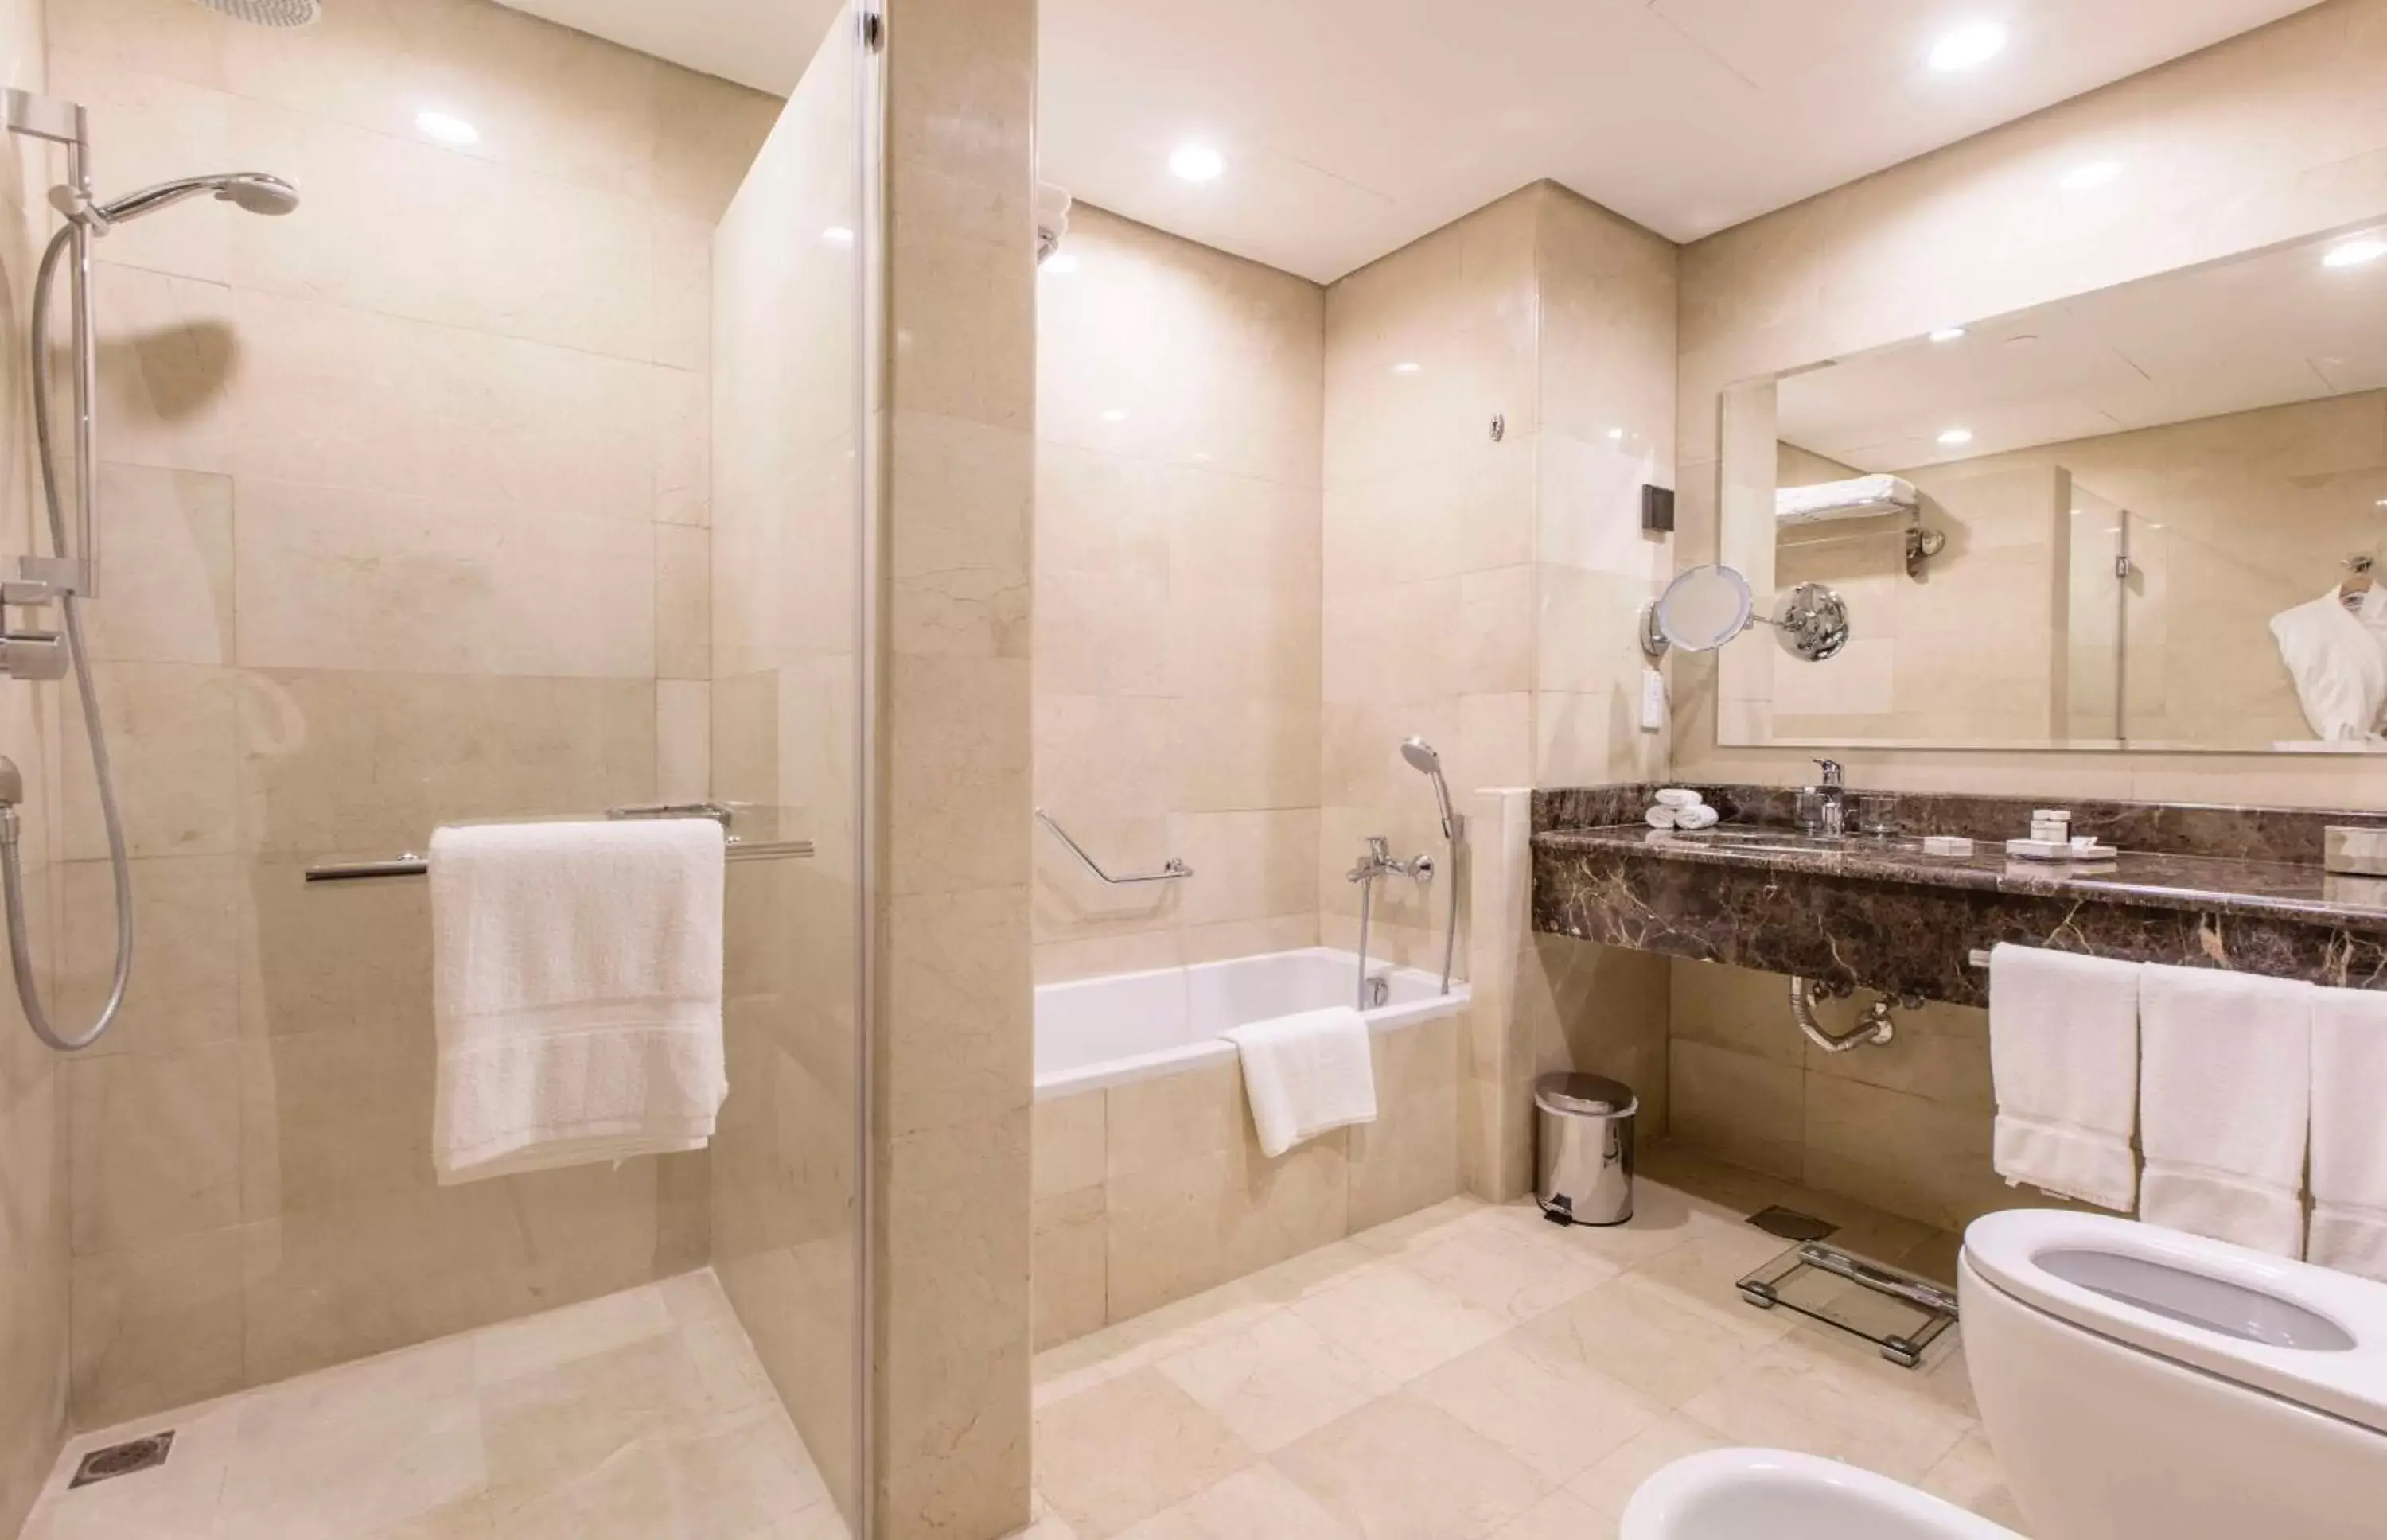 Bathroom in Alandalus Mall Hotel - Jeddah